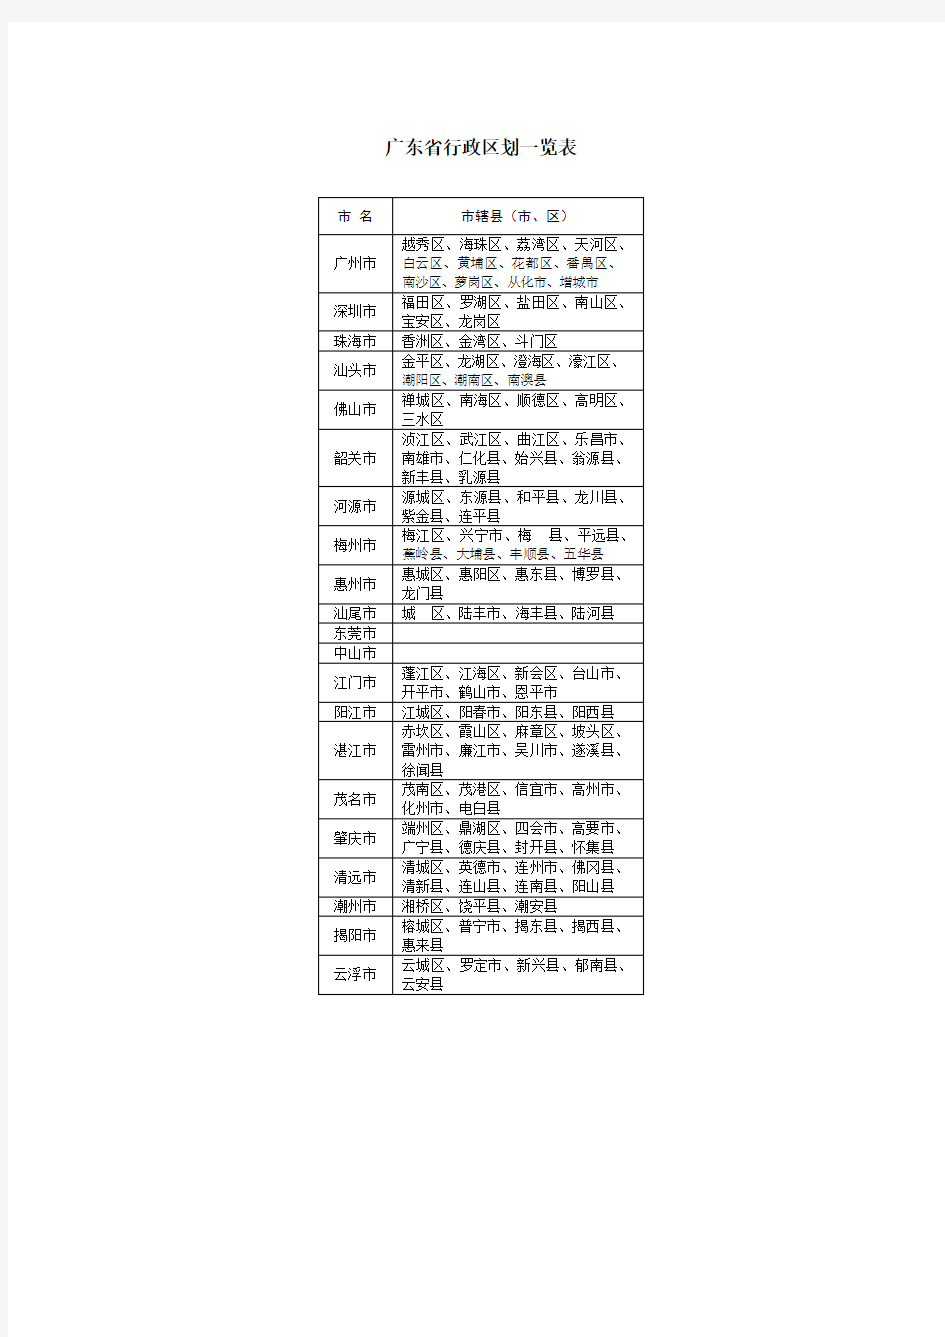 广东省行政区划一览表